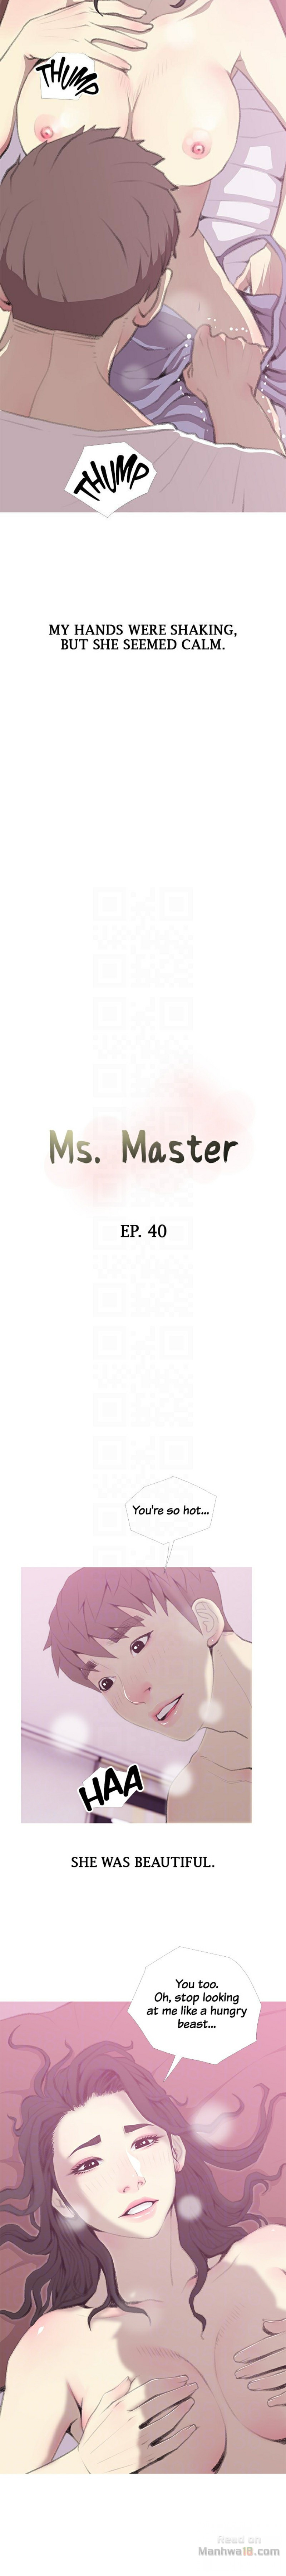 The image Ms. Master - Chapter 40 - ypw0x1qKuVSW4tE - ManhwaManga.io